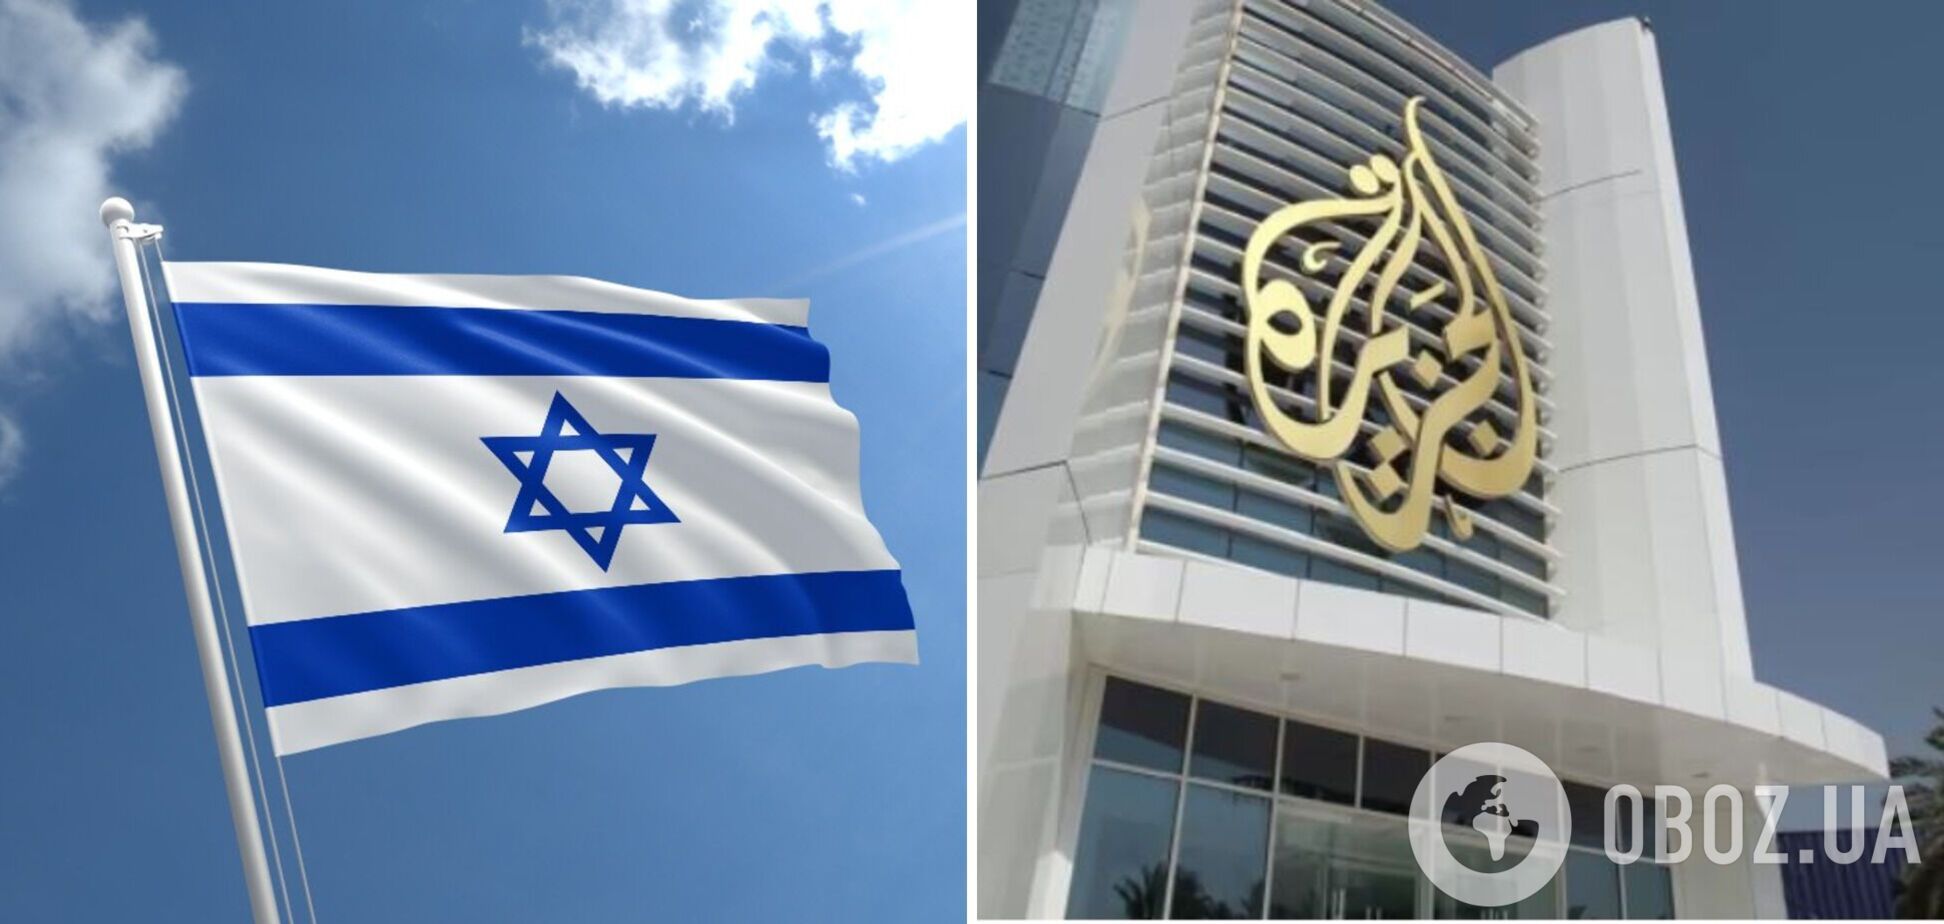 В Израиле закрыли телеканал 'Аль-Джазира' и изъяли оборудование: что происходит